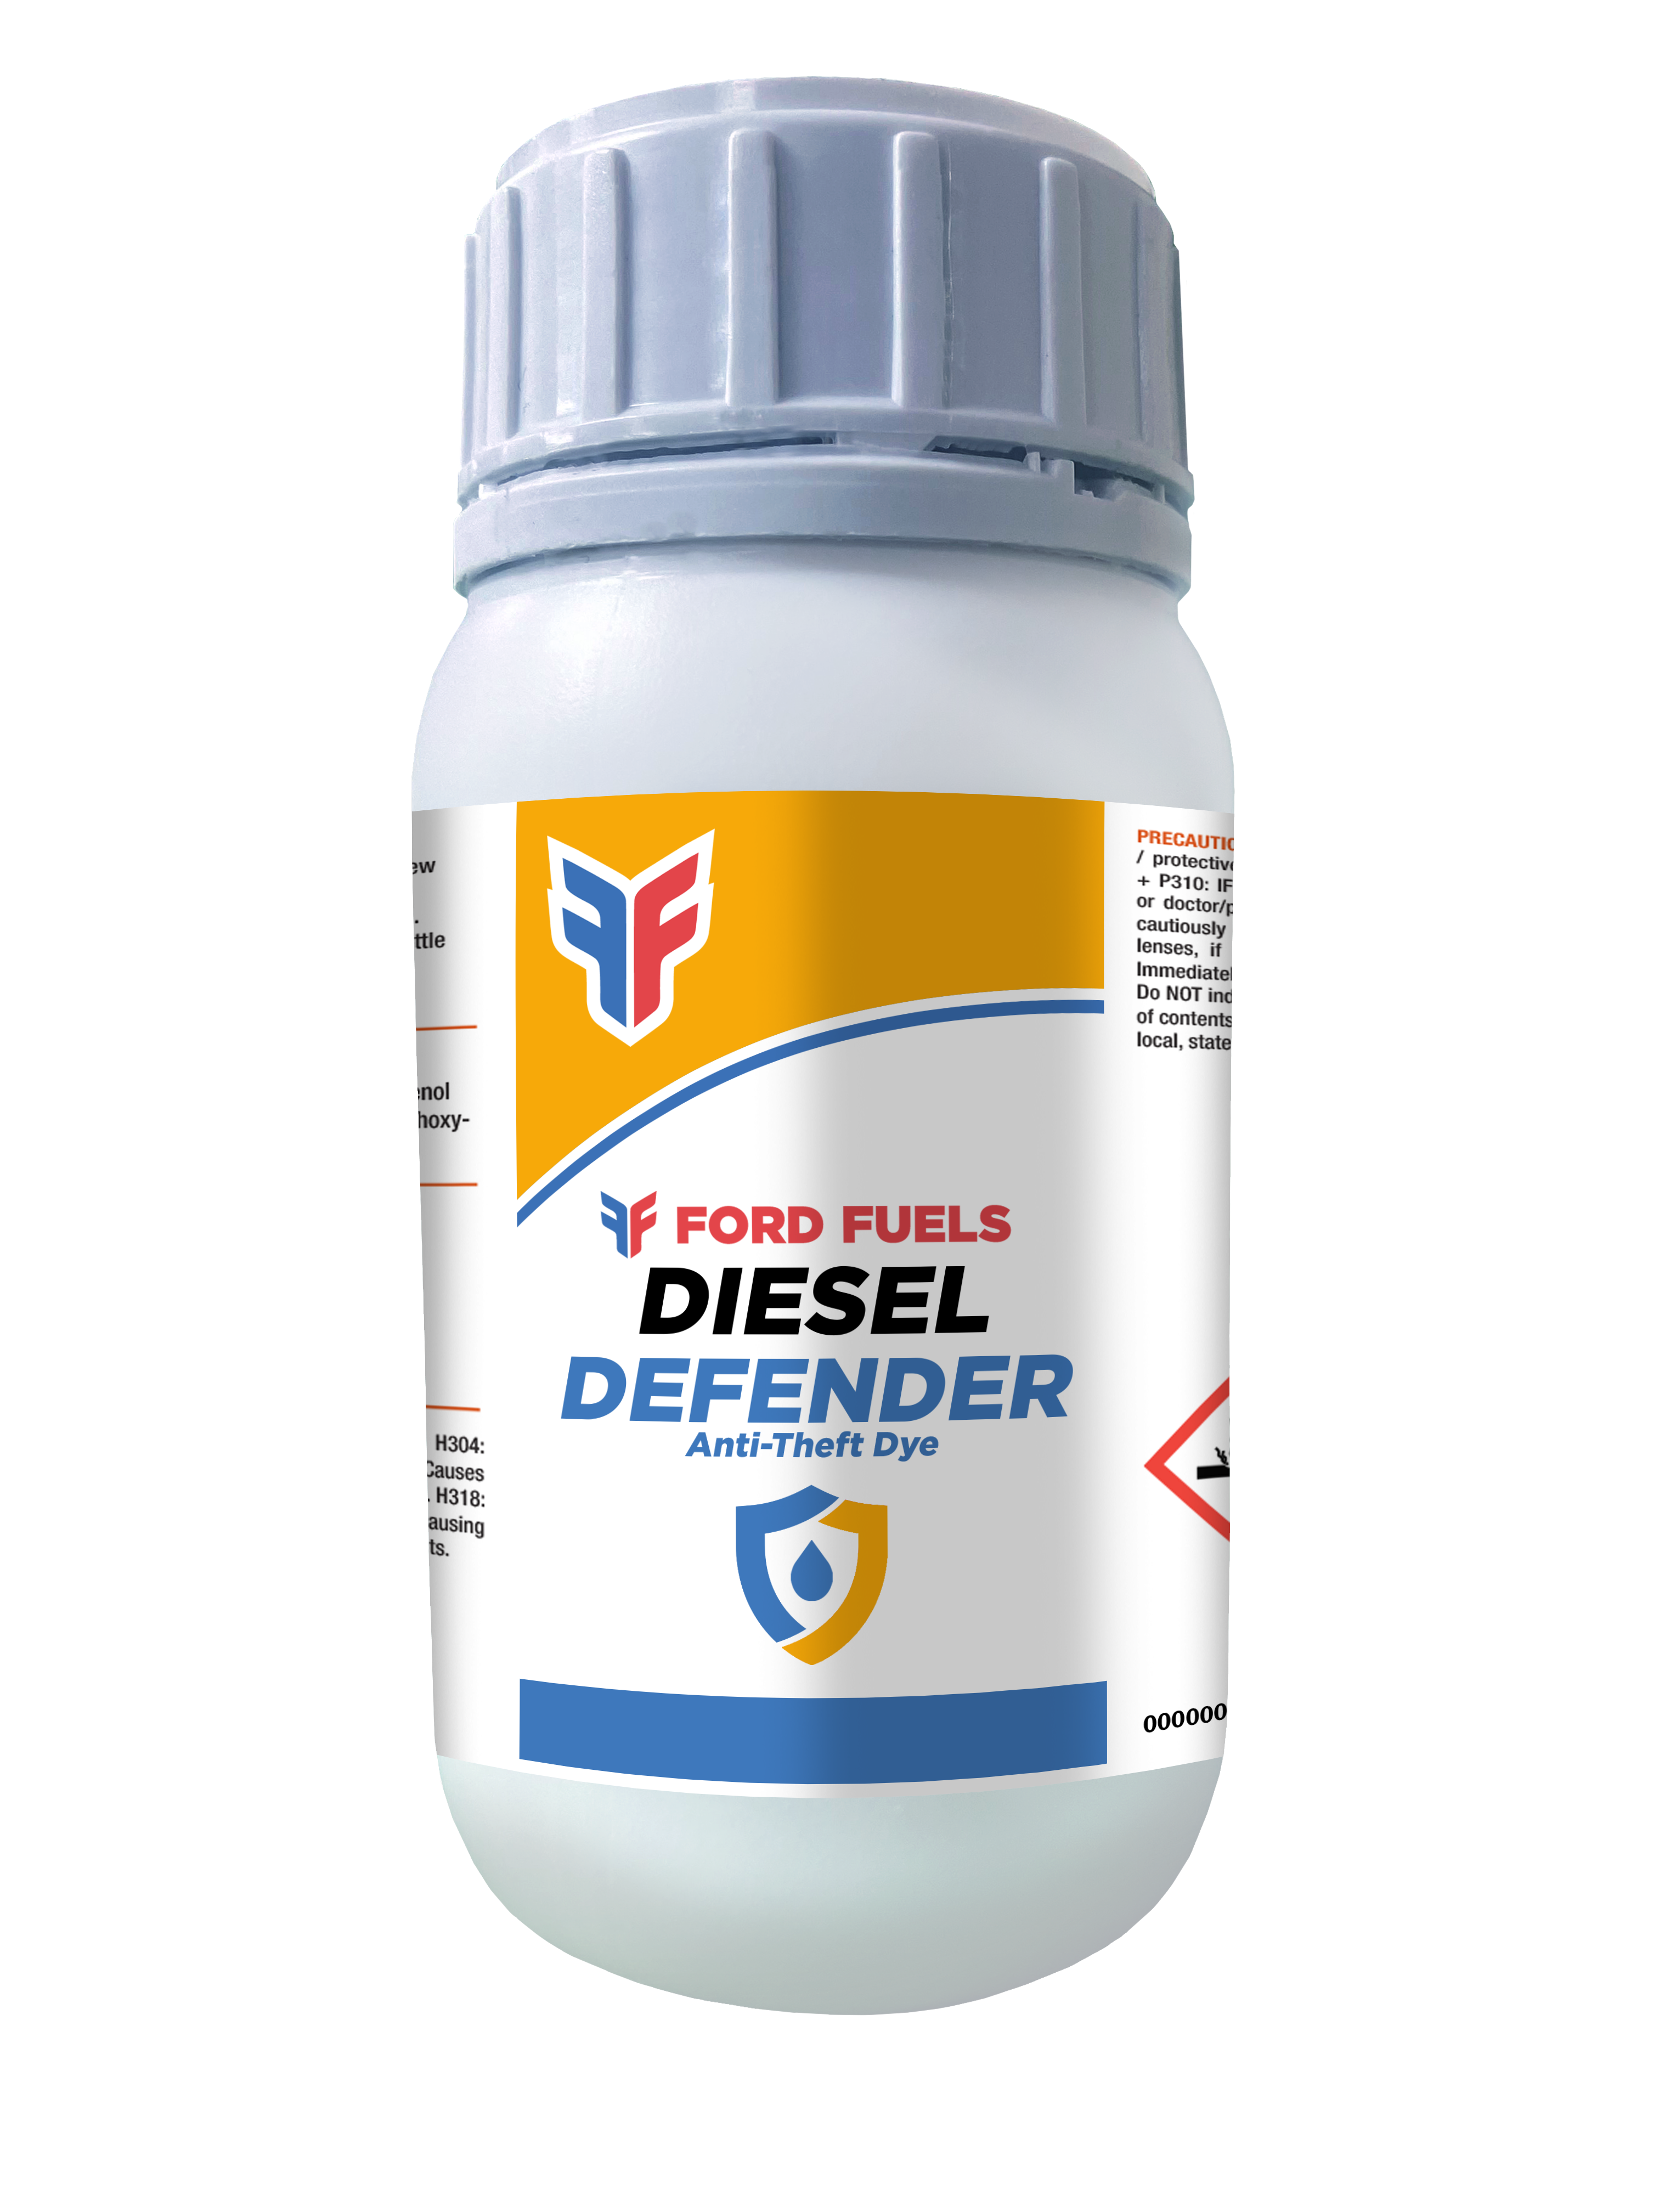 https://commercial.fordfuels.co.uk/wp-content/uploads/sites/10/Diesel-Defender-338x450.png+https://commercial.fordfuels.co.uk/wp-content/uploads/sites/10/Diesel-Defender-675x900.png